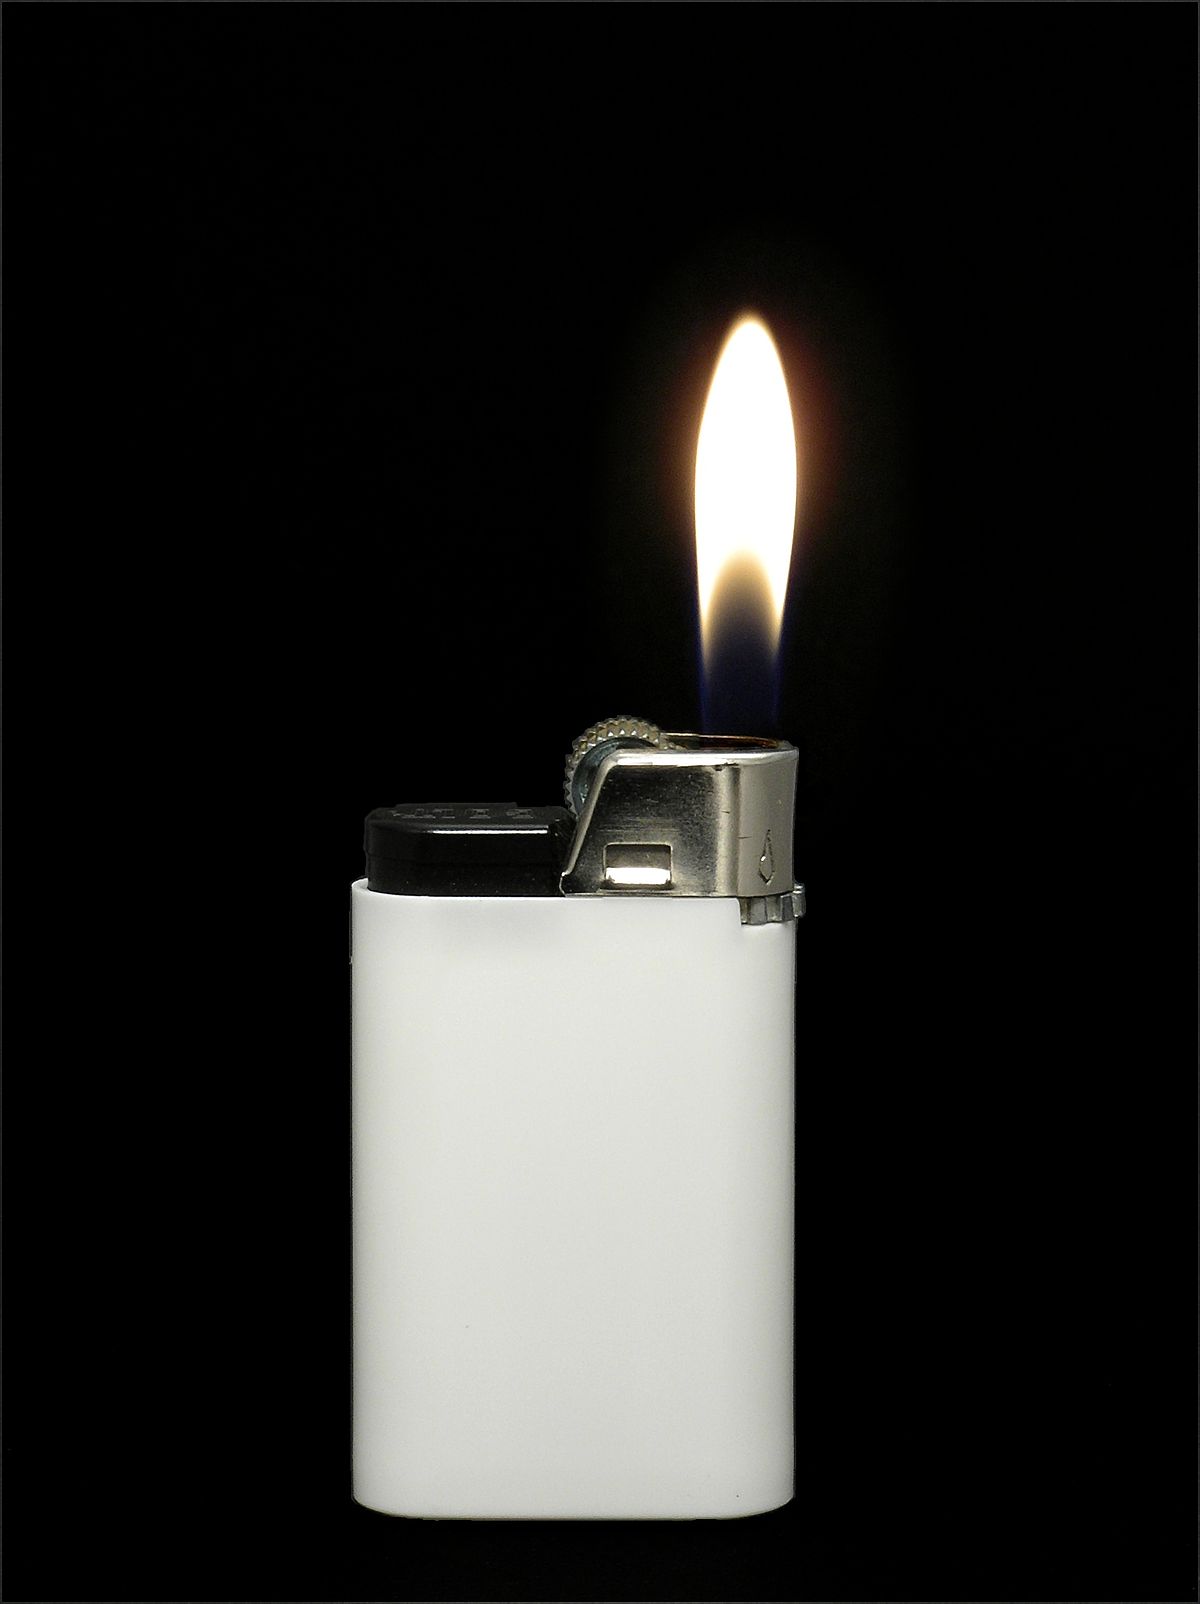 Image Of Lighter - KibrisPDR